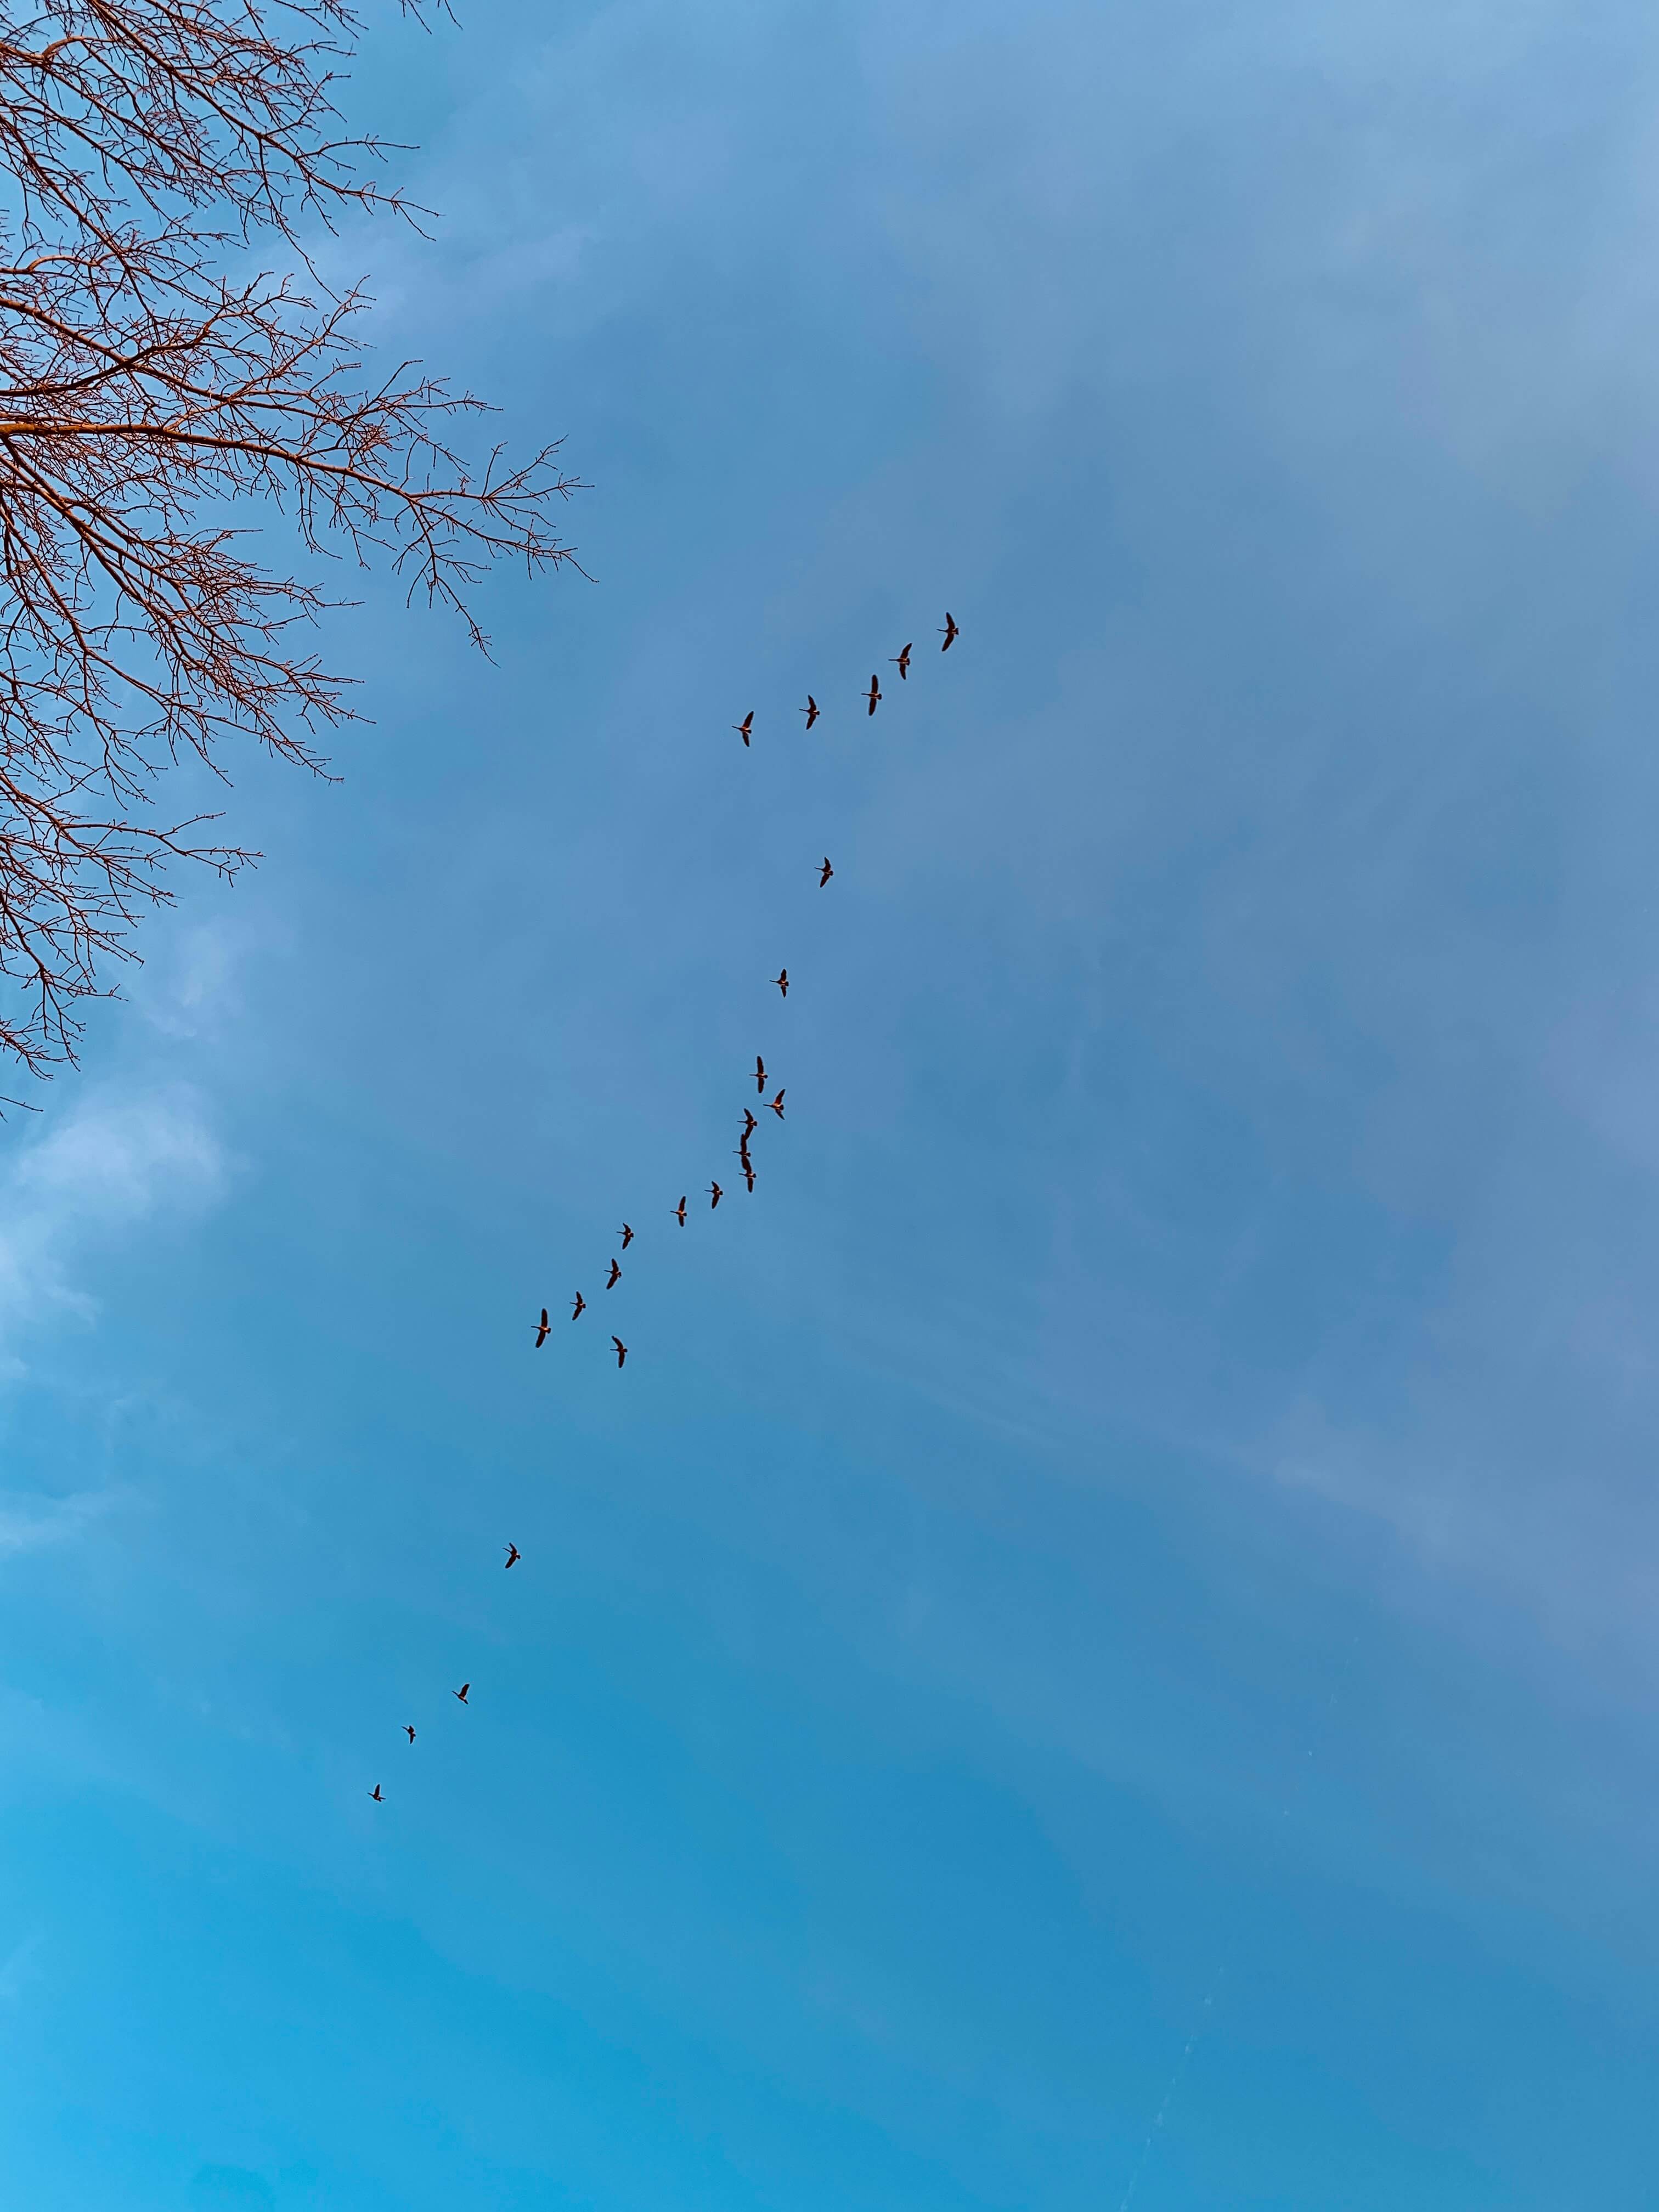 하늘-위-캐네디언 구스떼가-날아가고-있는-모습